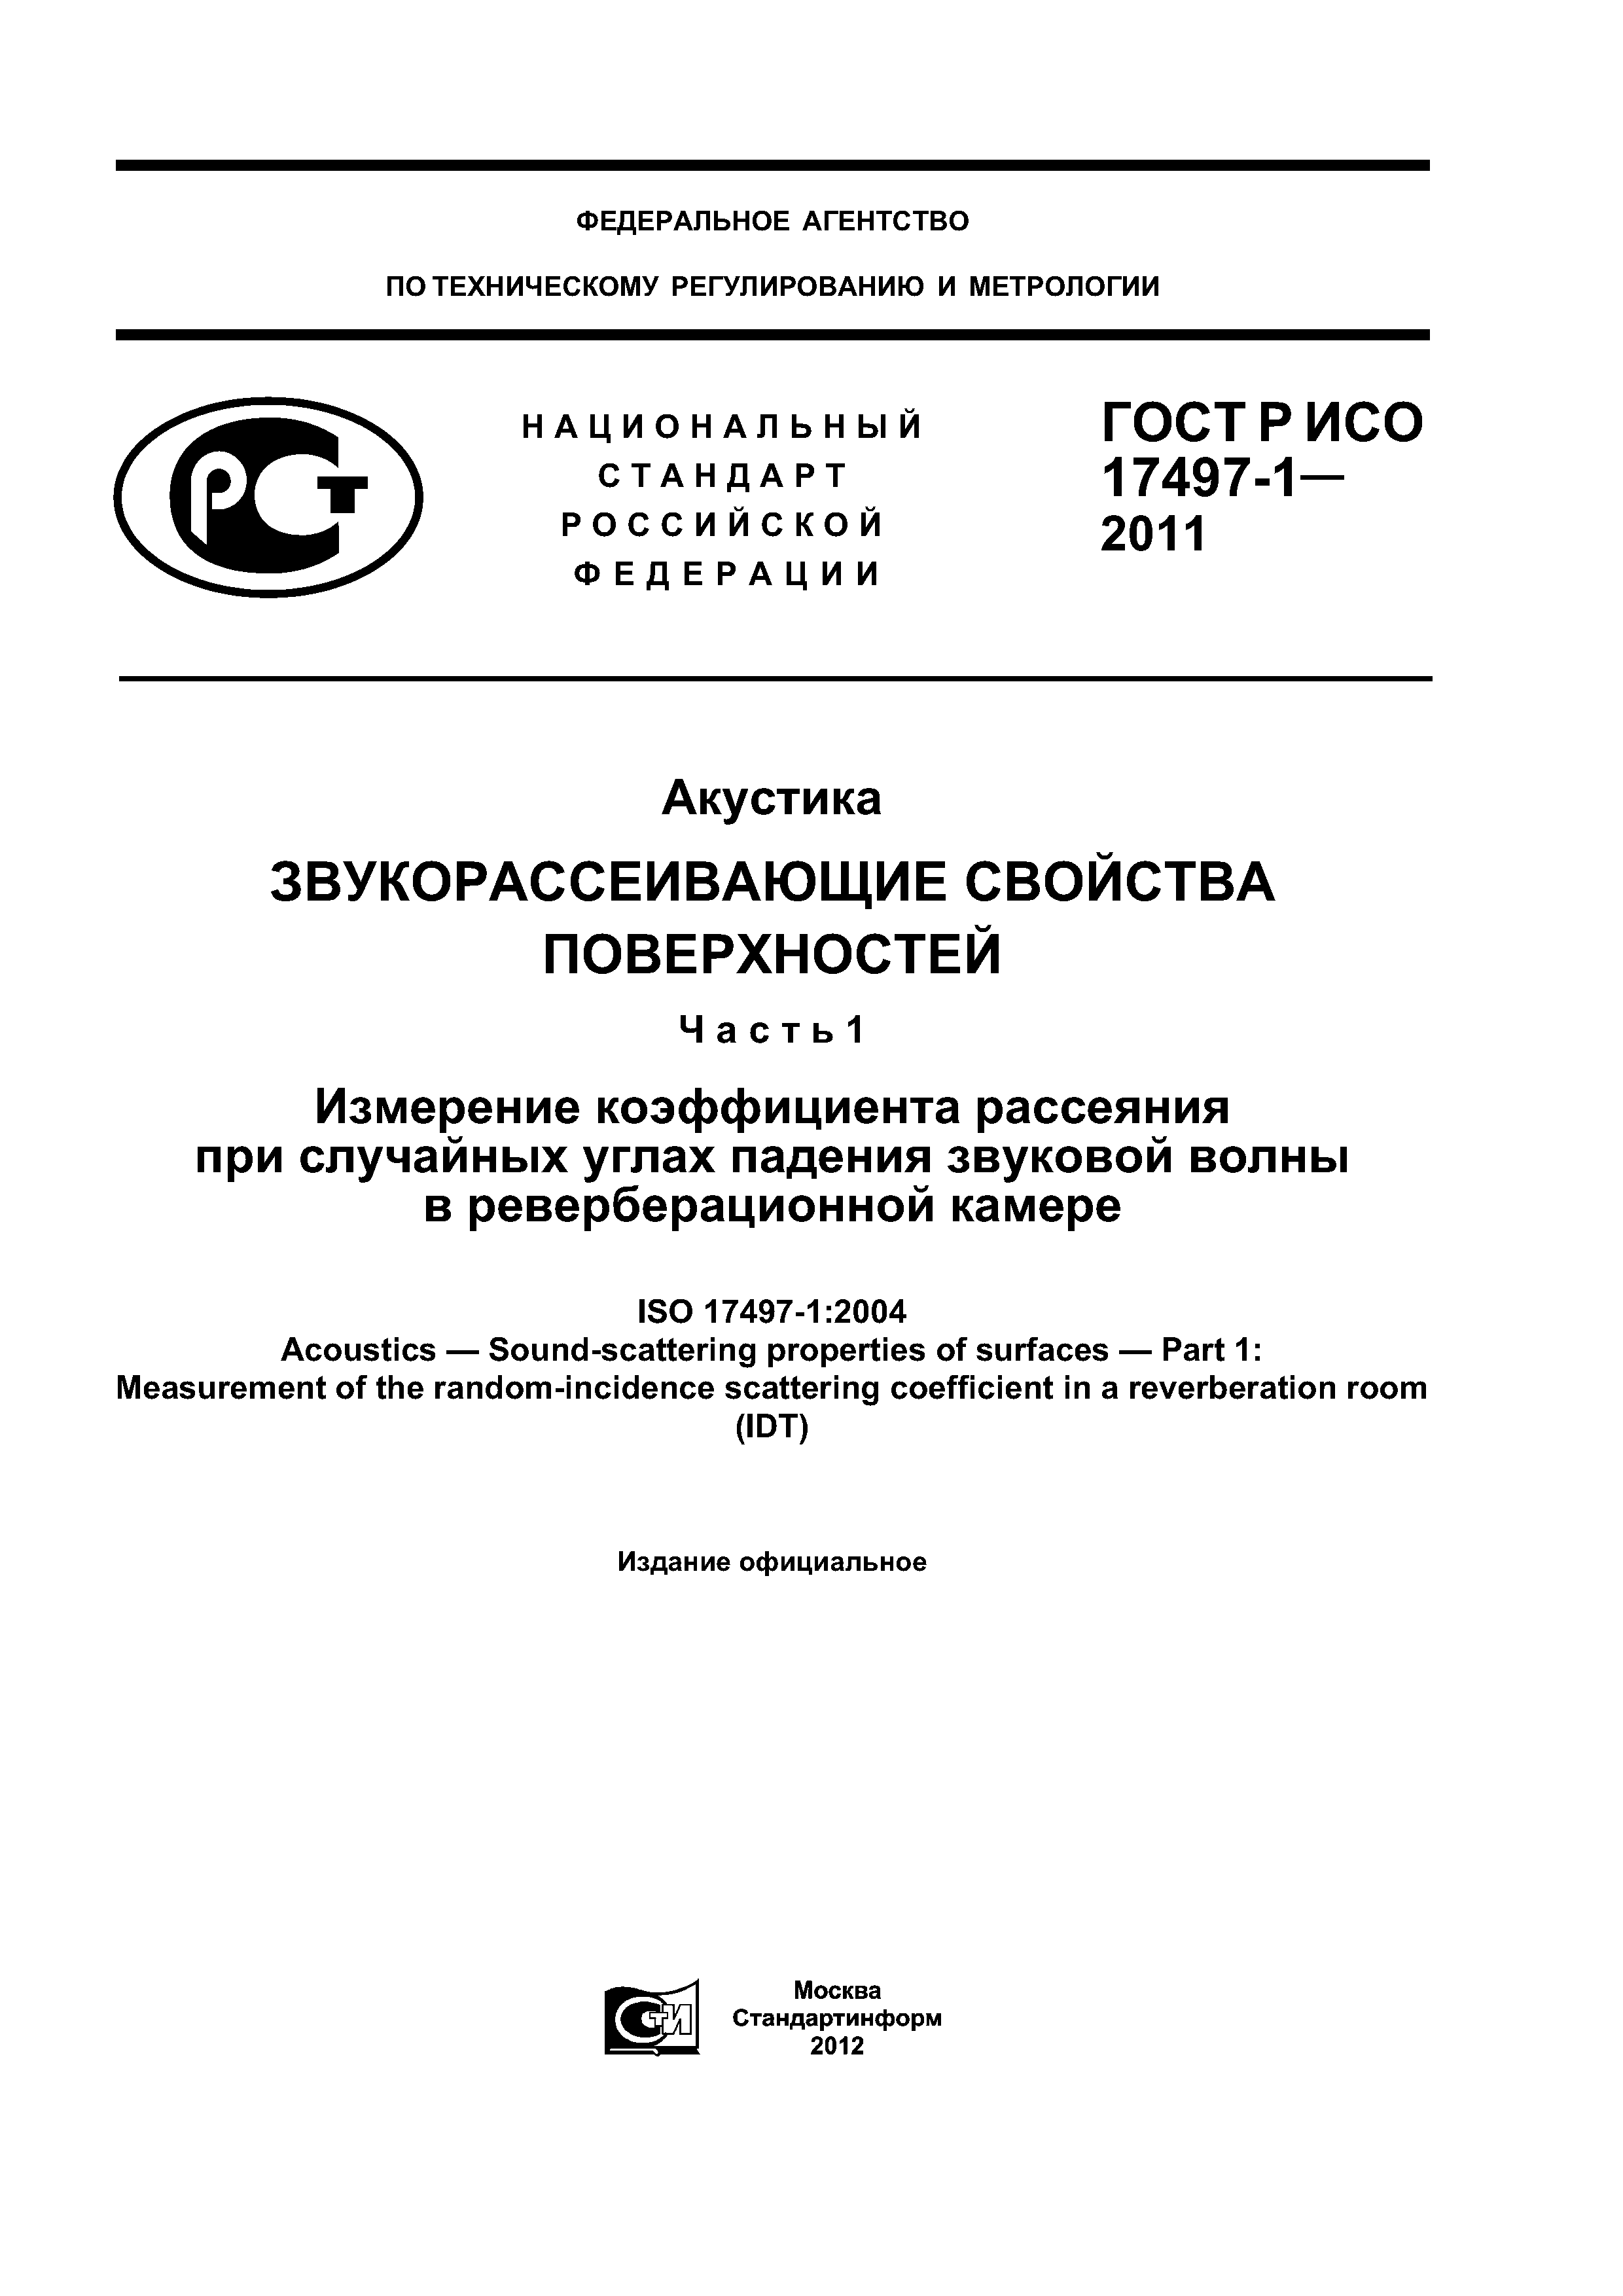 ГОСТ Р ИСО 17497-1-2011